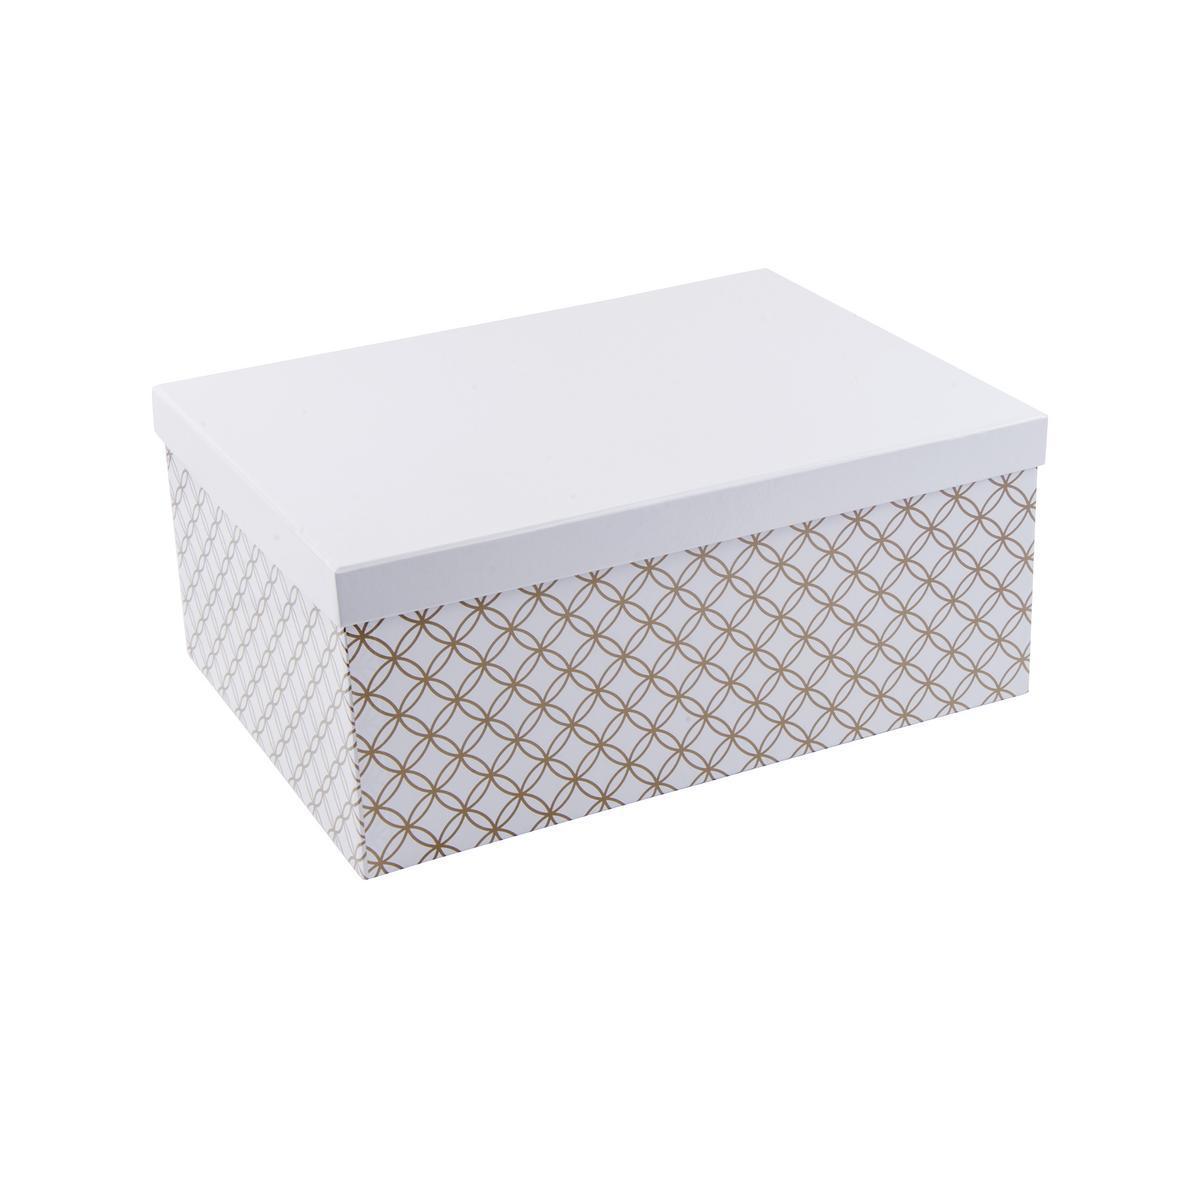 Boîte scandinave - Carton - 29 x 21 x H 12,5 cm - Blanc et doré